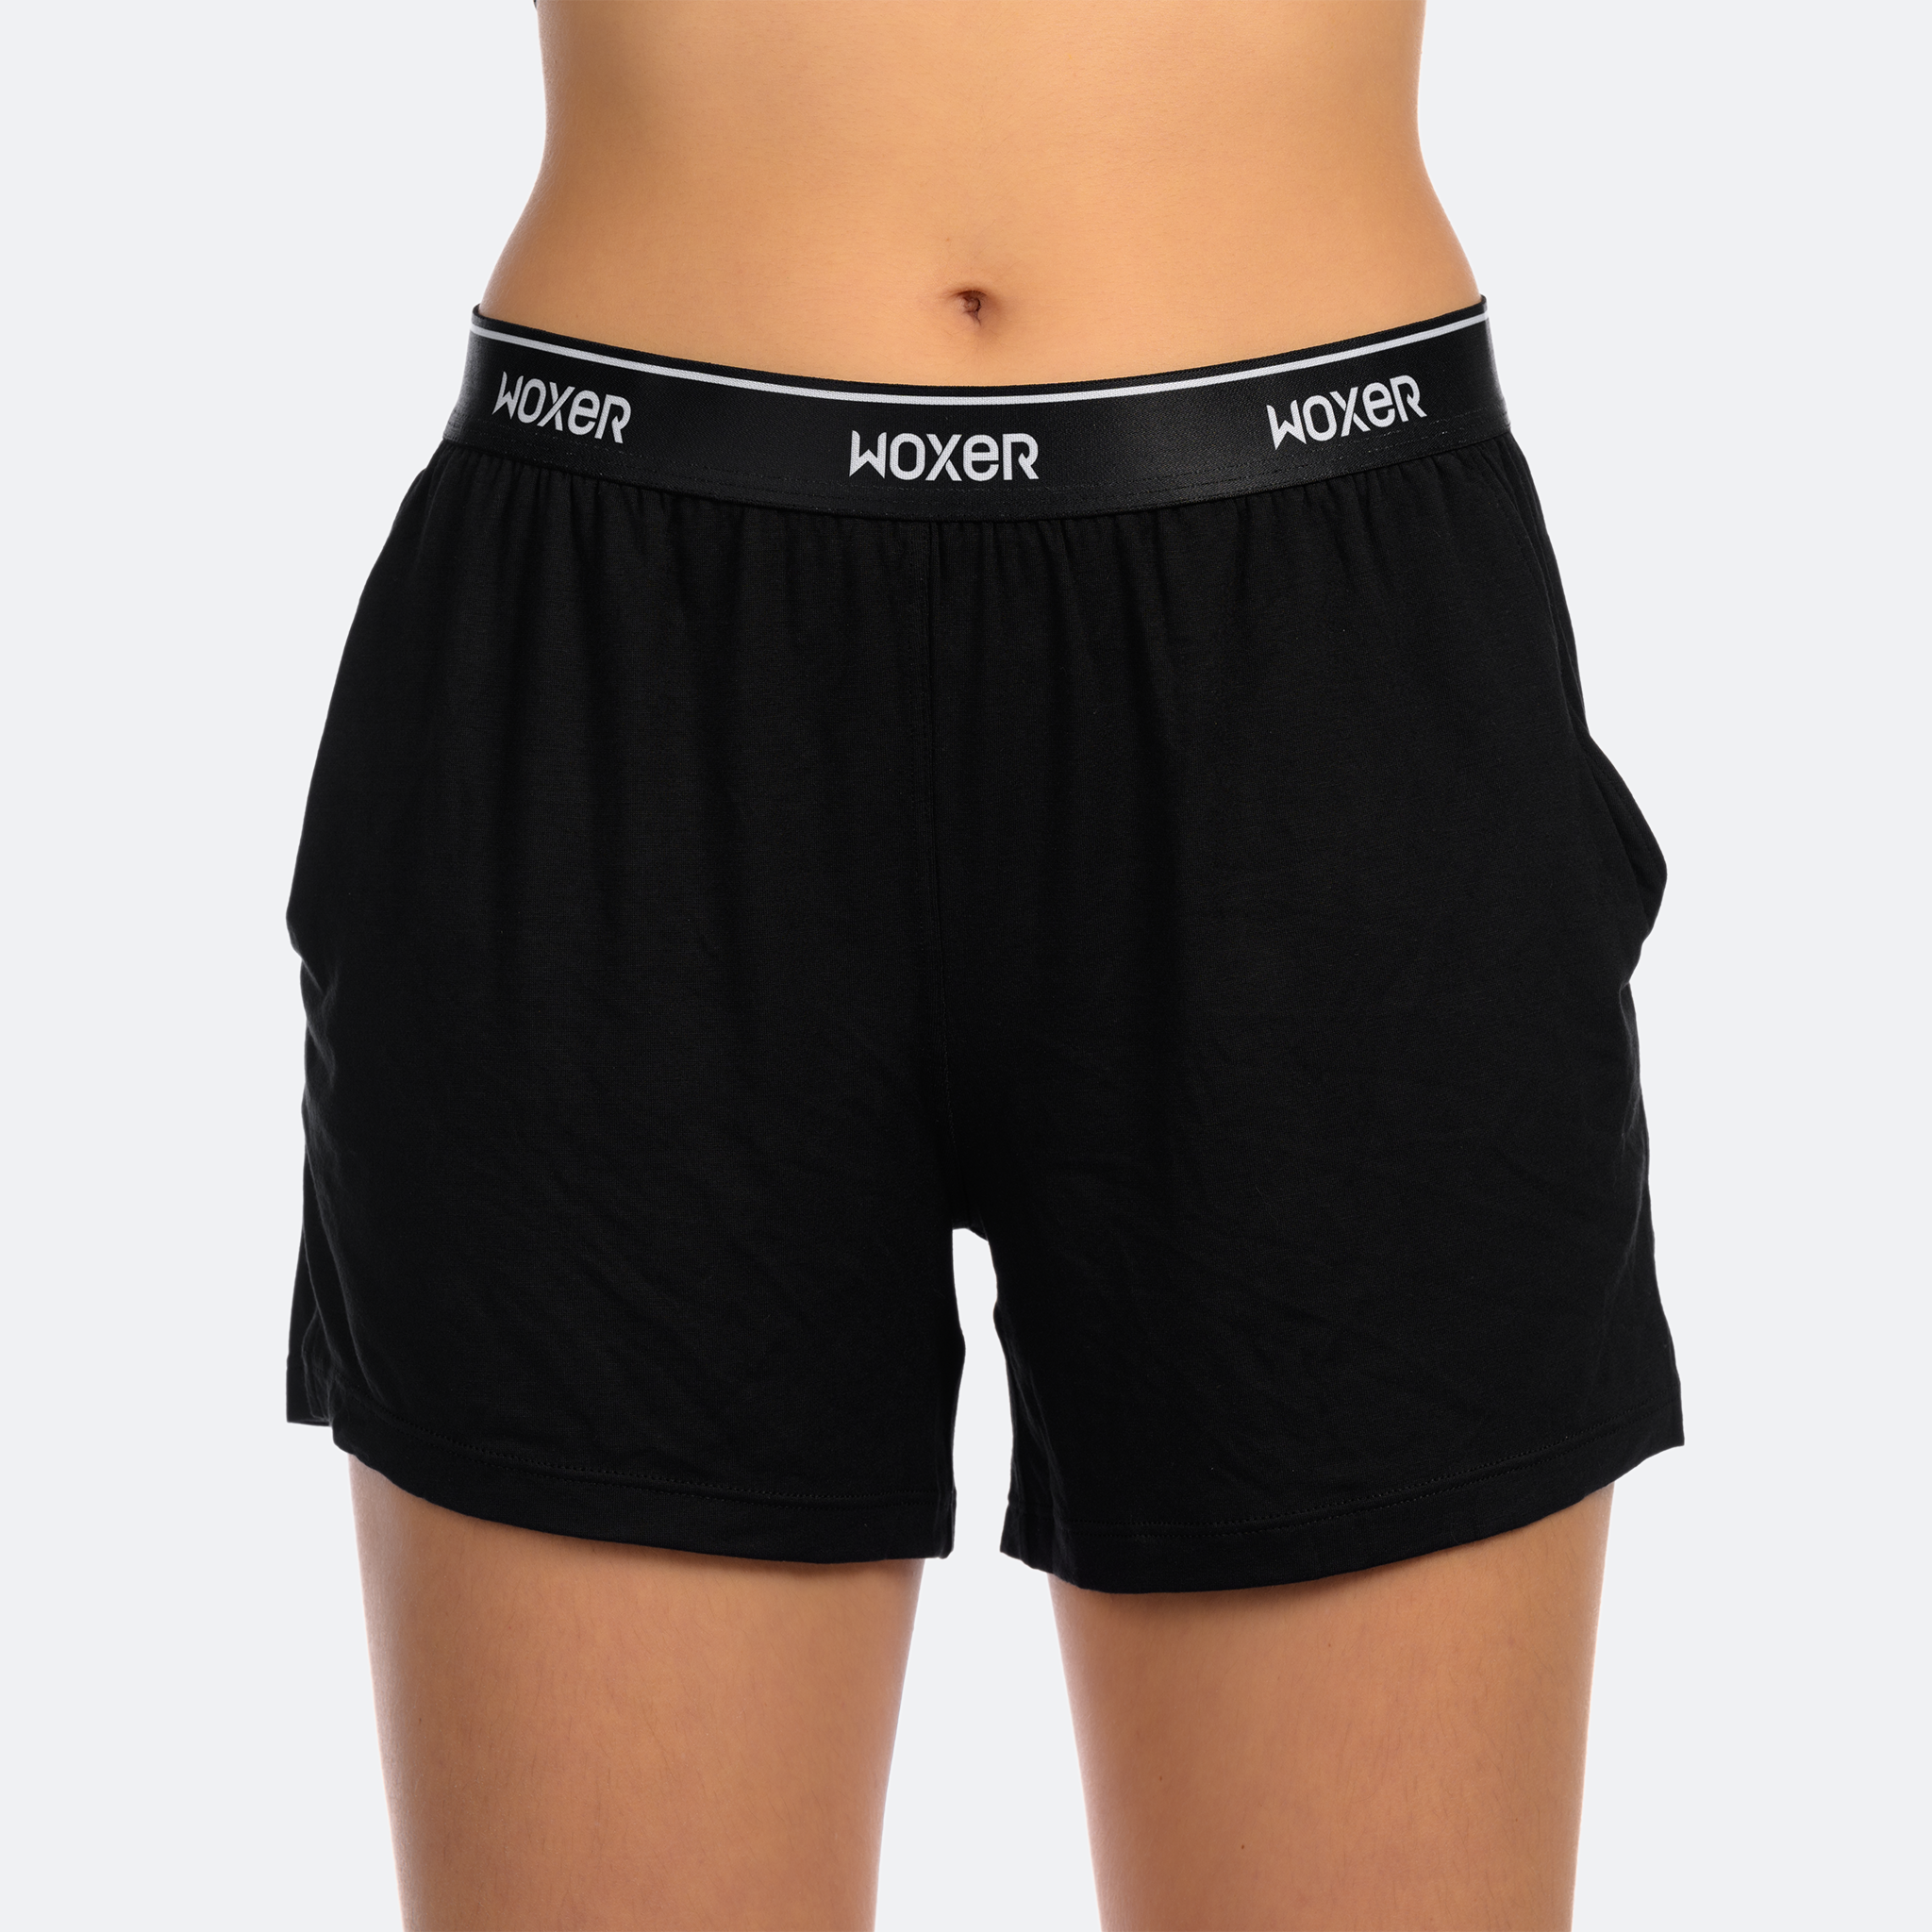 Dreamer Black 2.0, Boxer Briefs for Women, Girls Boxer Shorts